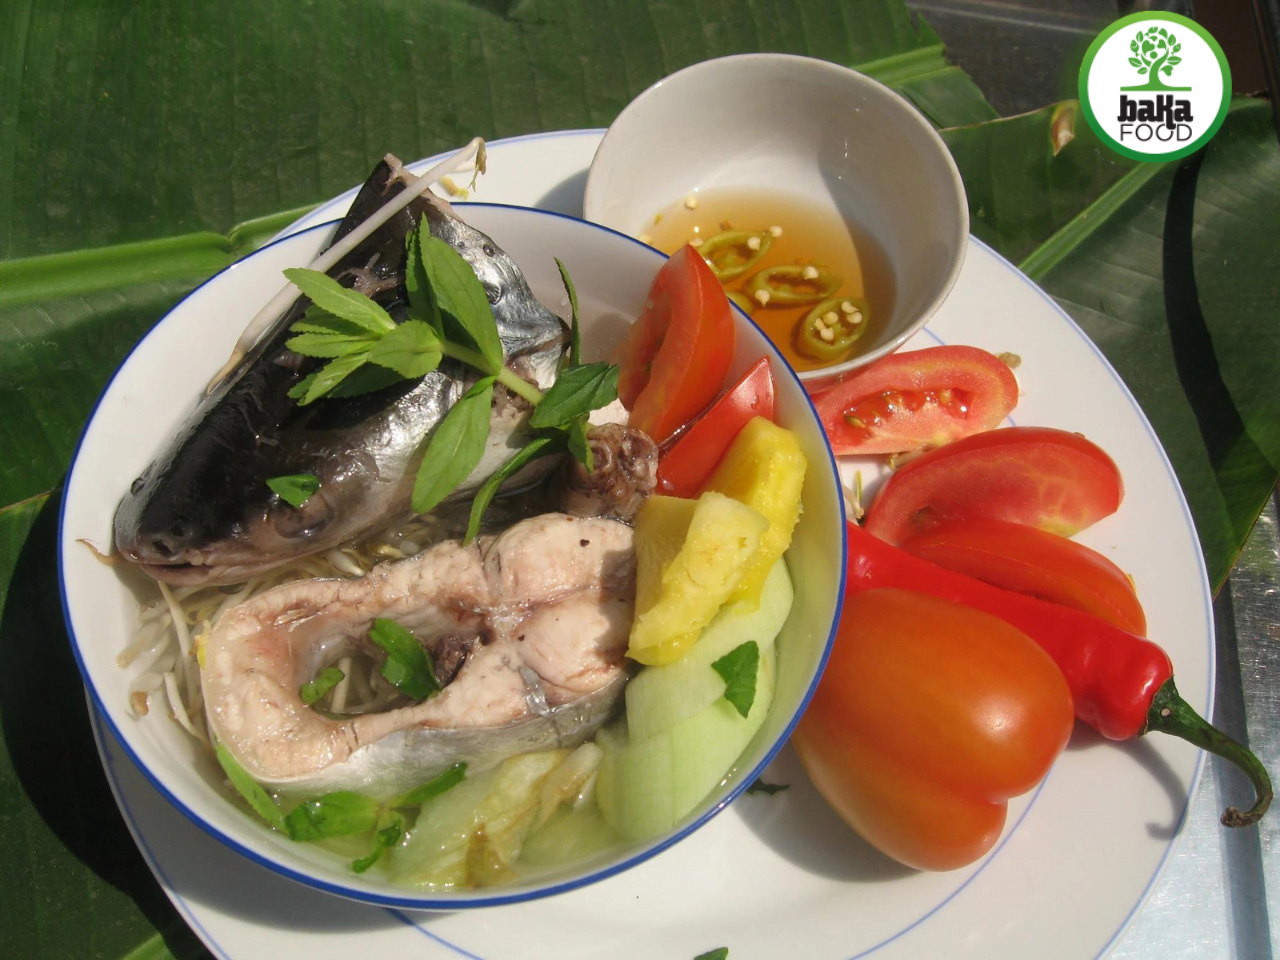 Được biết đến là "nhân sâm nước", cá bông lau là một nguồn thực phẩm giàu chất béo (lipid) không no và omega 3, có tác dụng tốt cho tim mạch và sức khỏe.